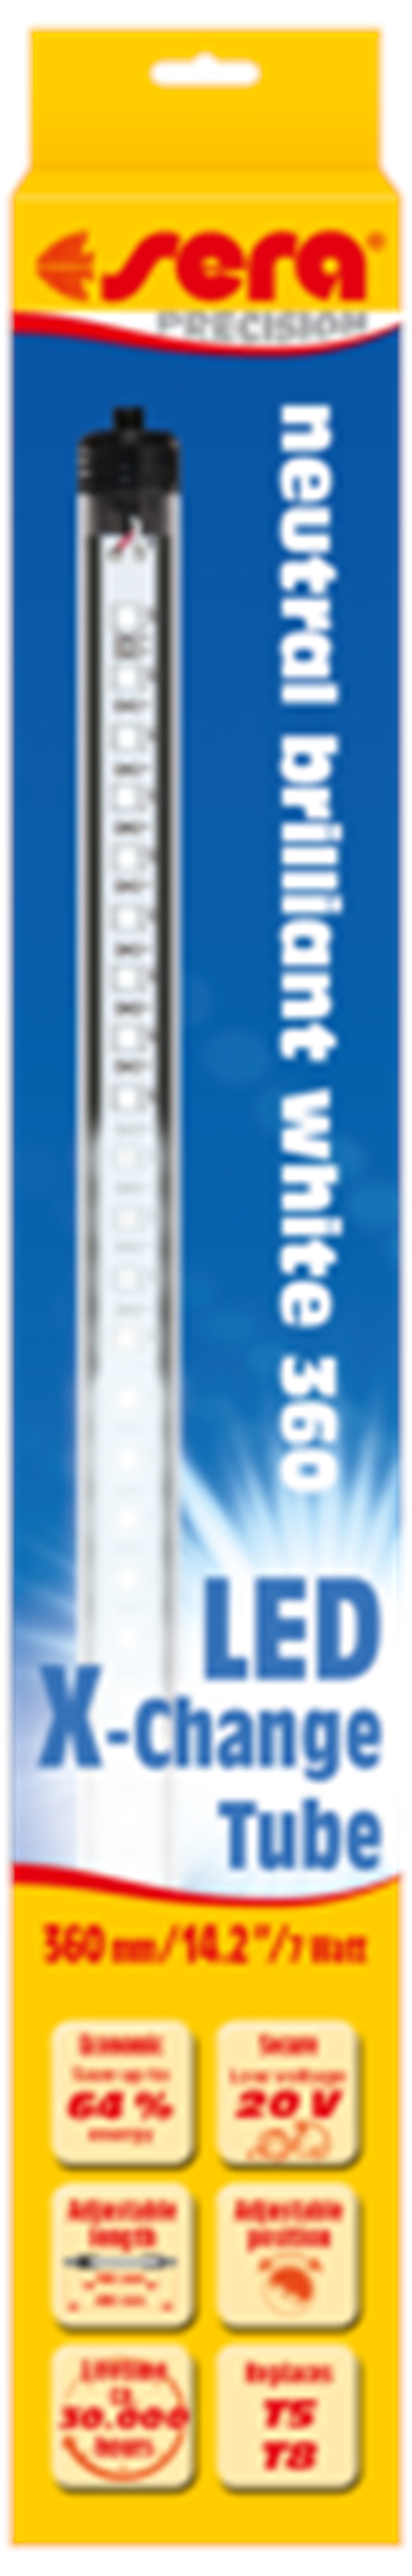 sera LED neutral brilliant white 520 mm / 8,2 W